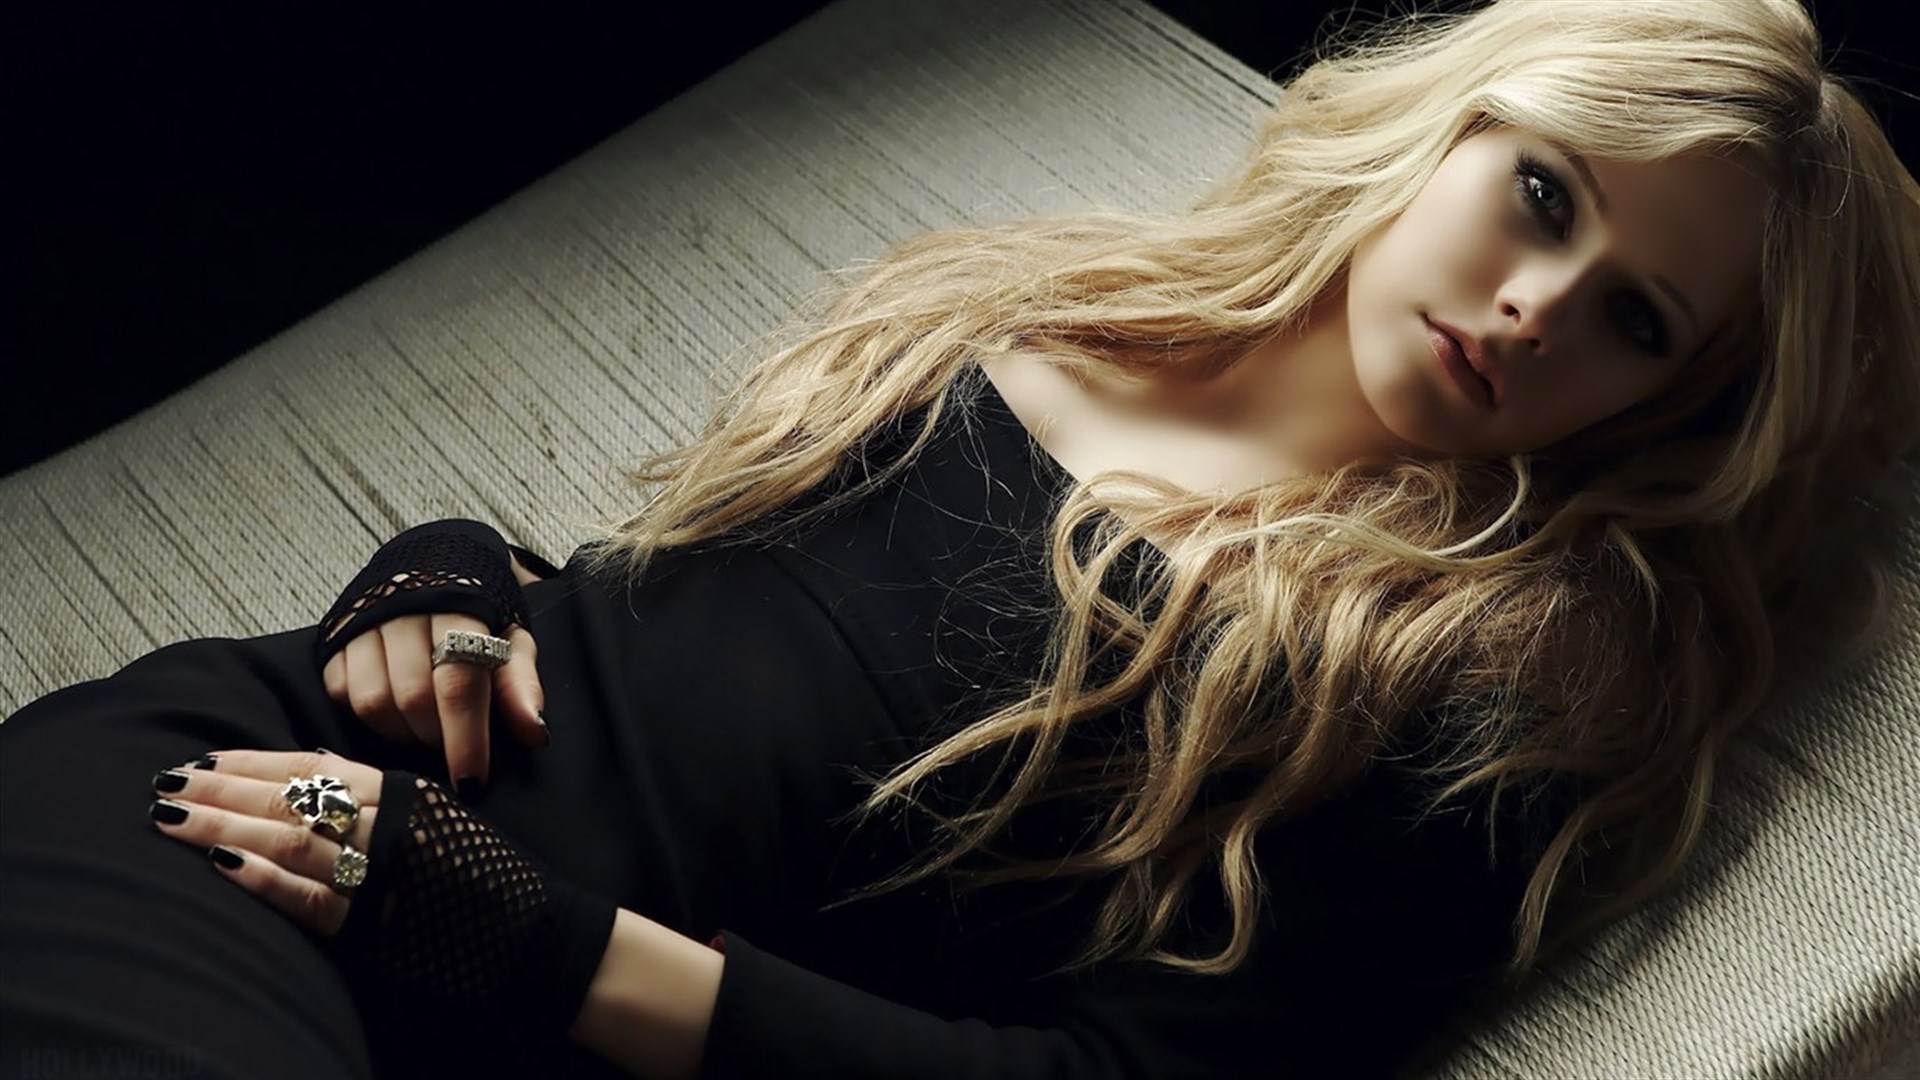 Download mobile wallpaper Music, Avril Lavigne, Singer, Blonde, Blue Eyes, Long Hair, Black Dress, Lying Down for free.